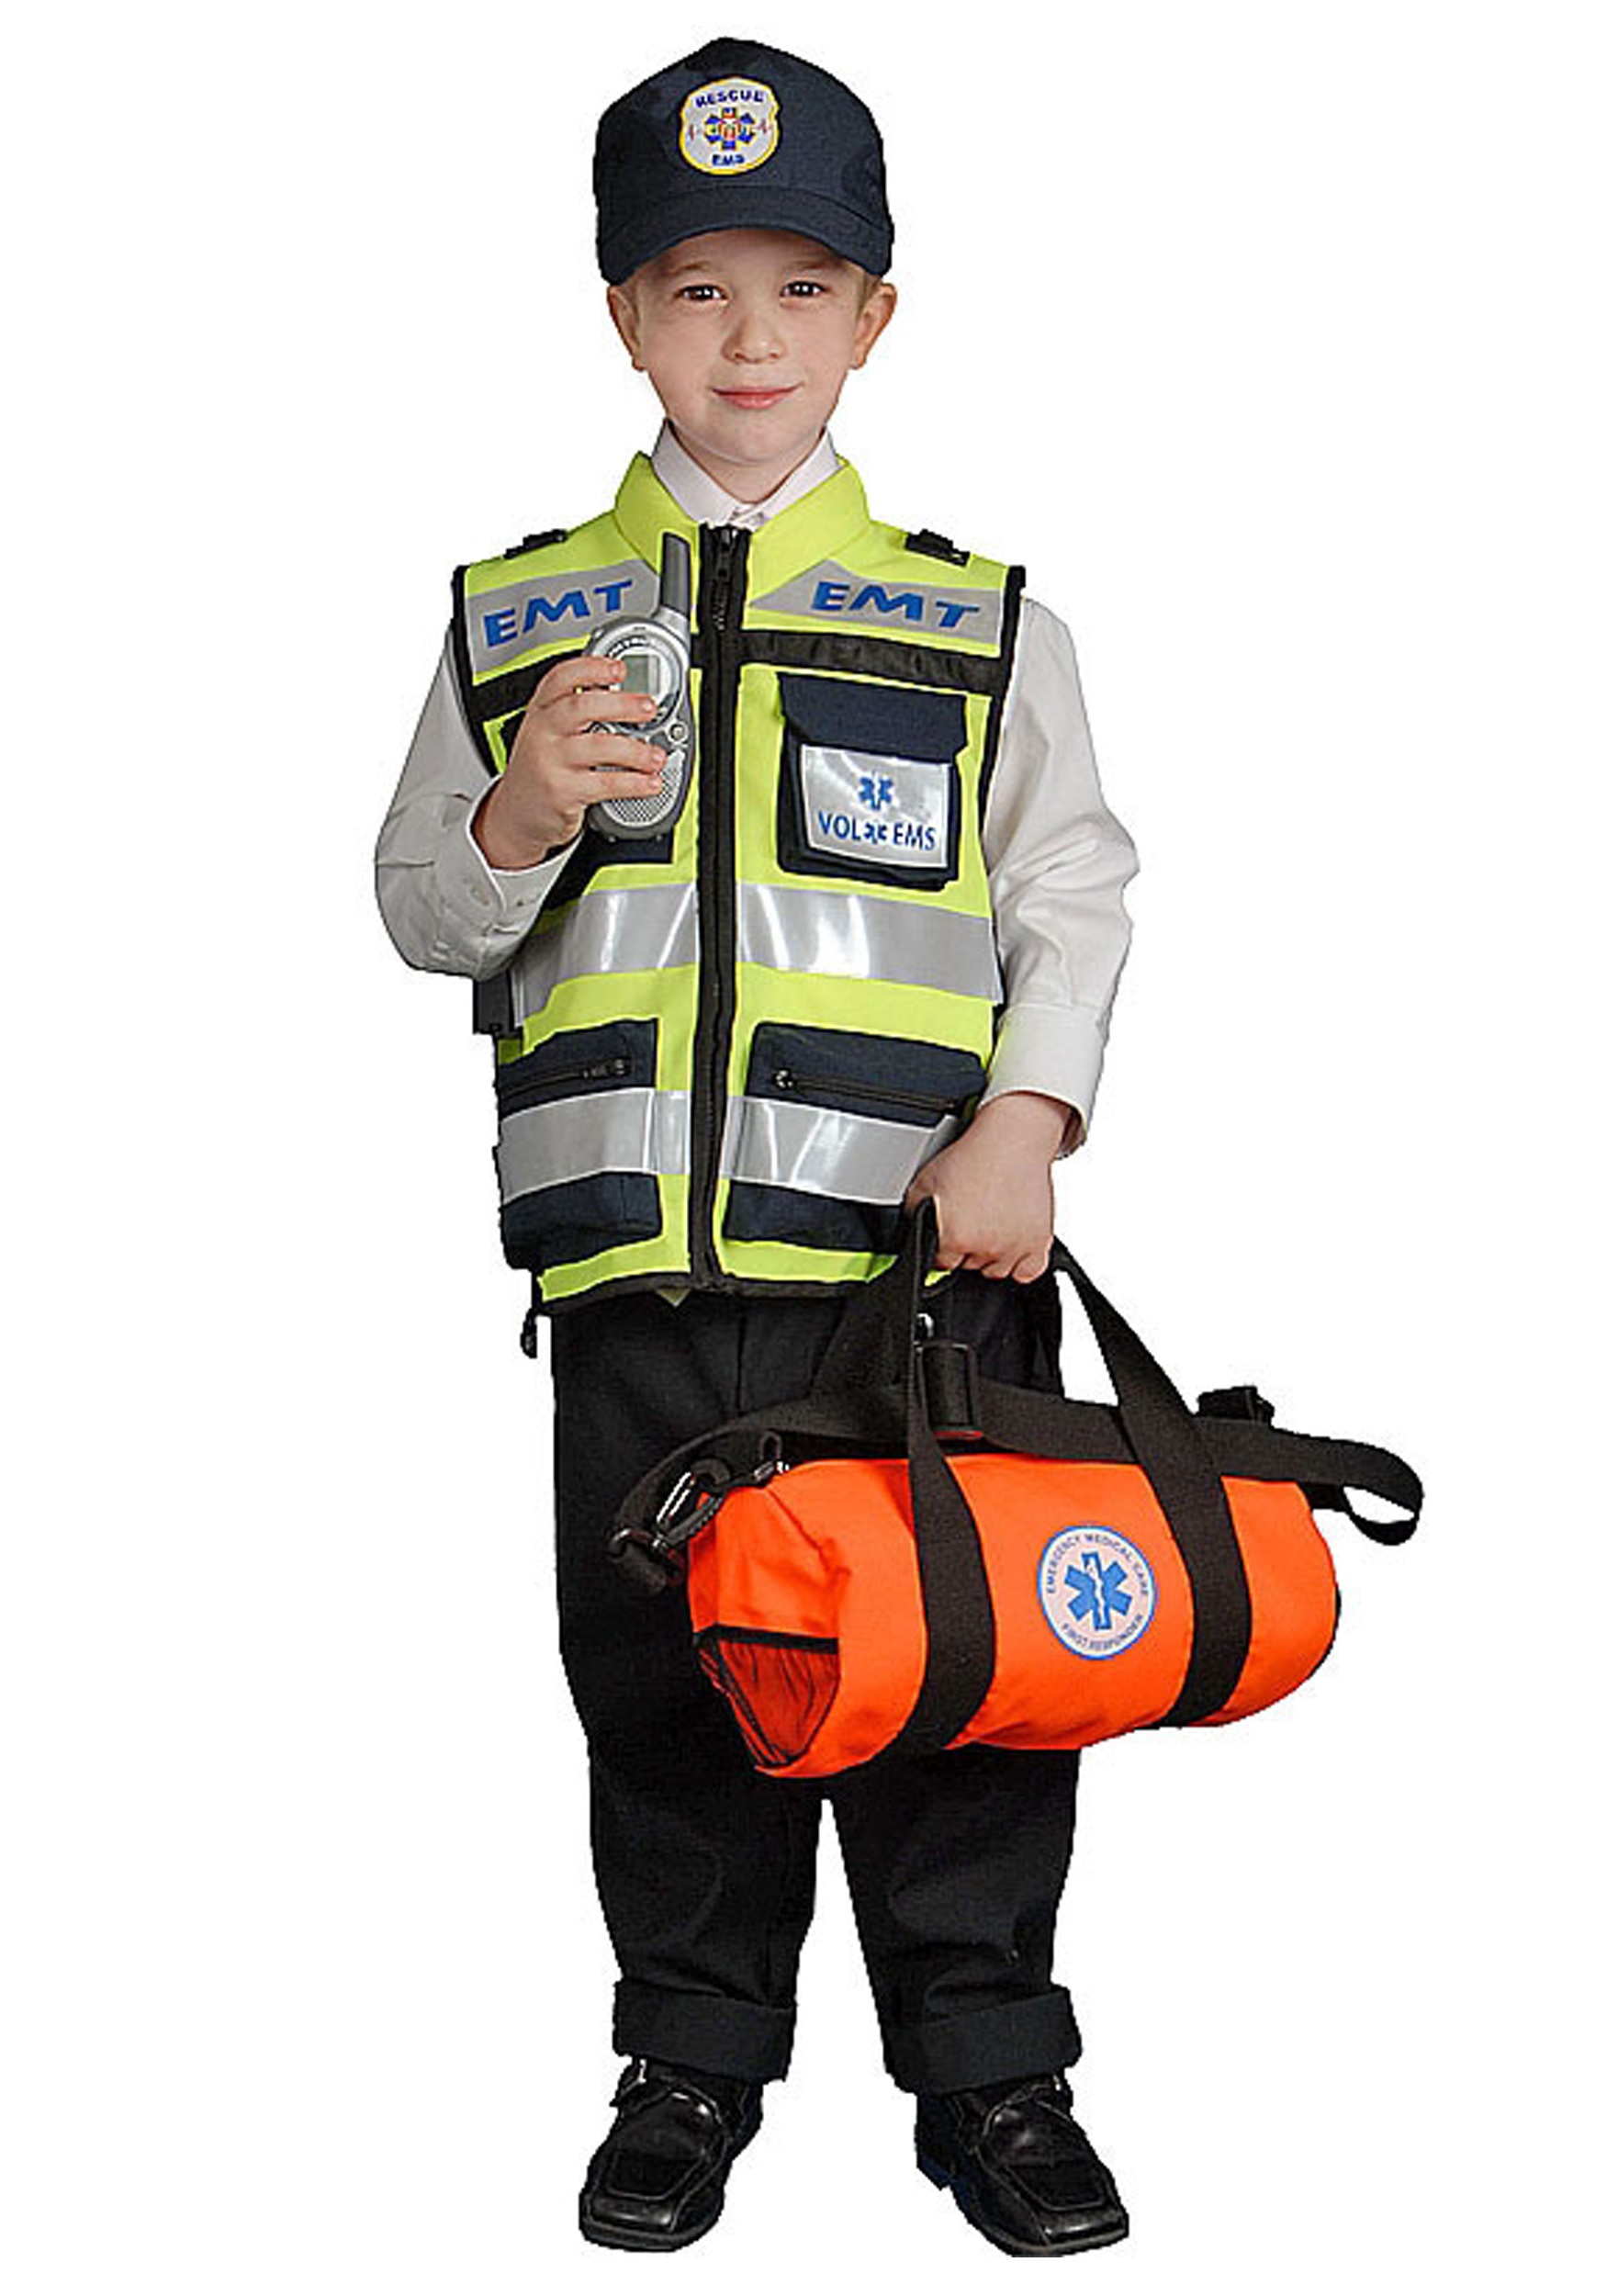 EMT Vest Kid's Costume